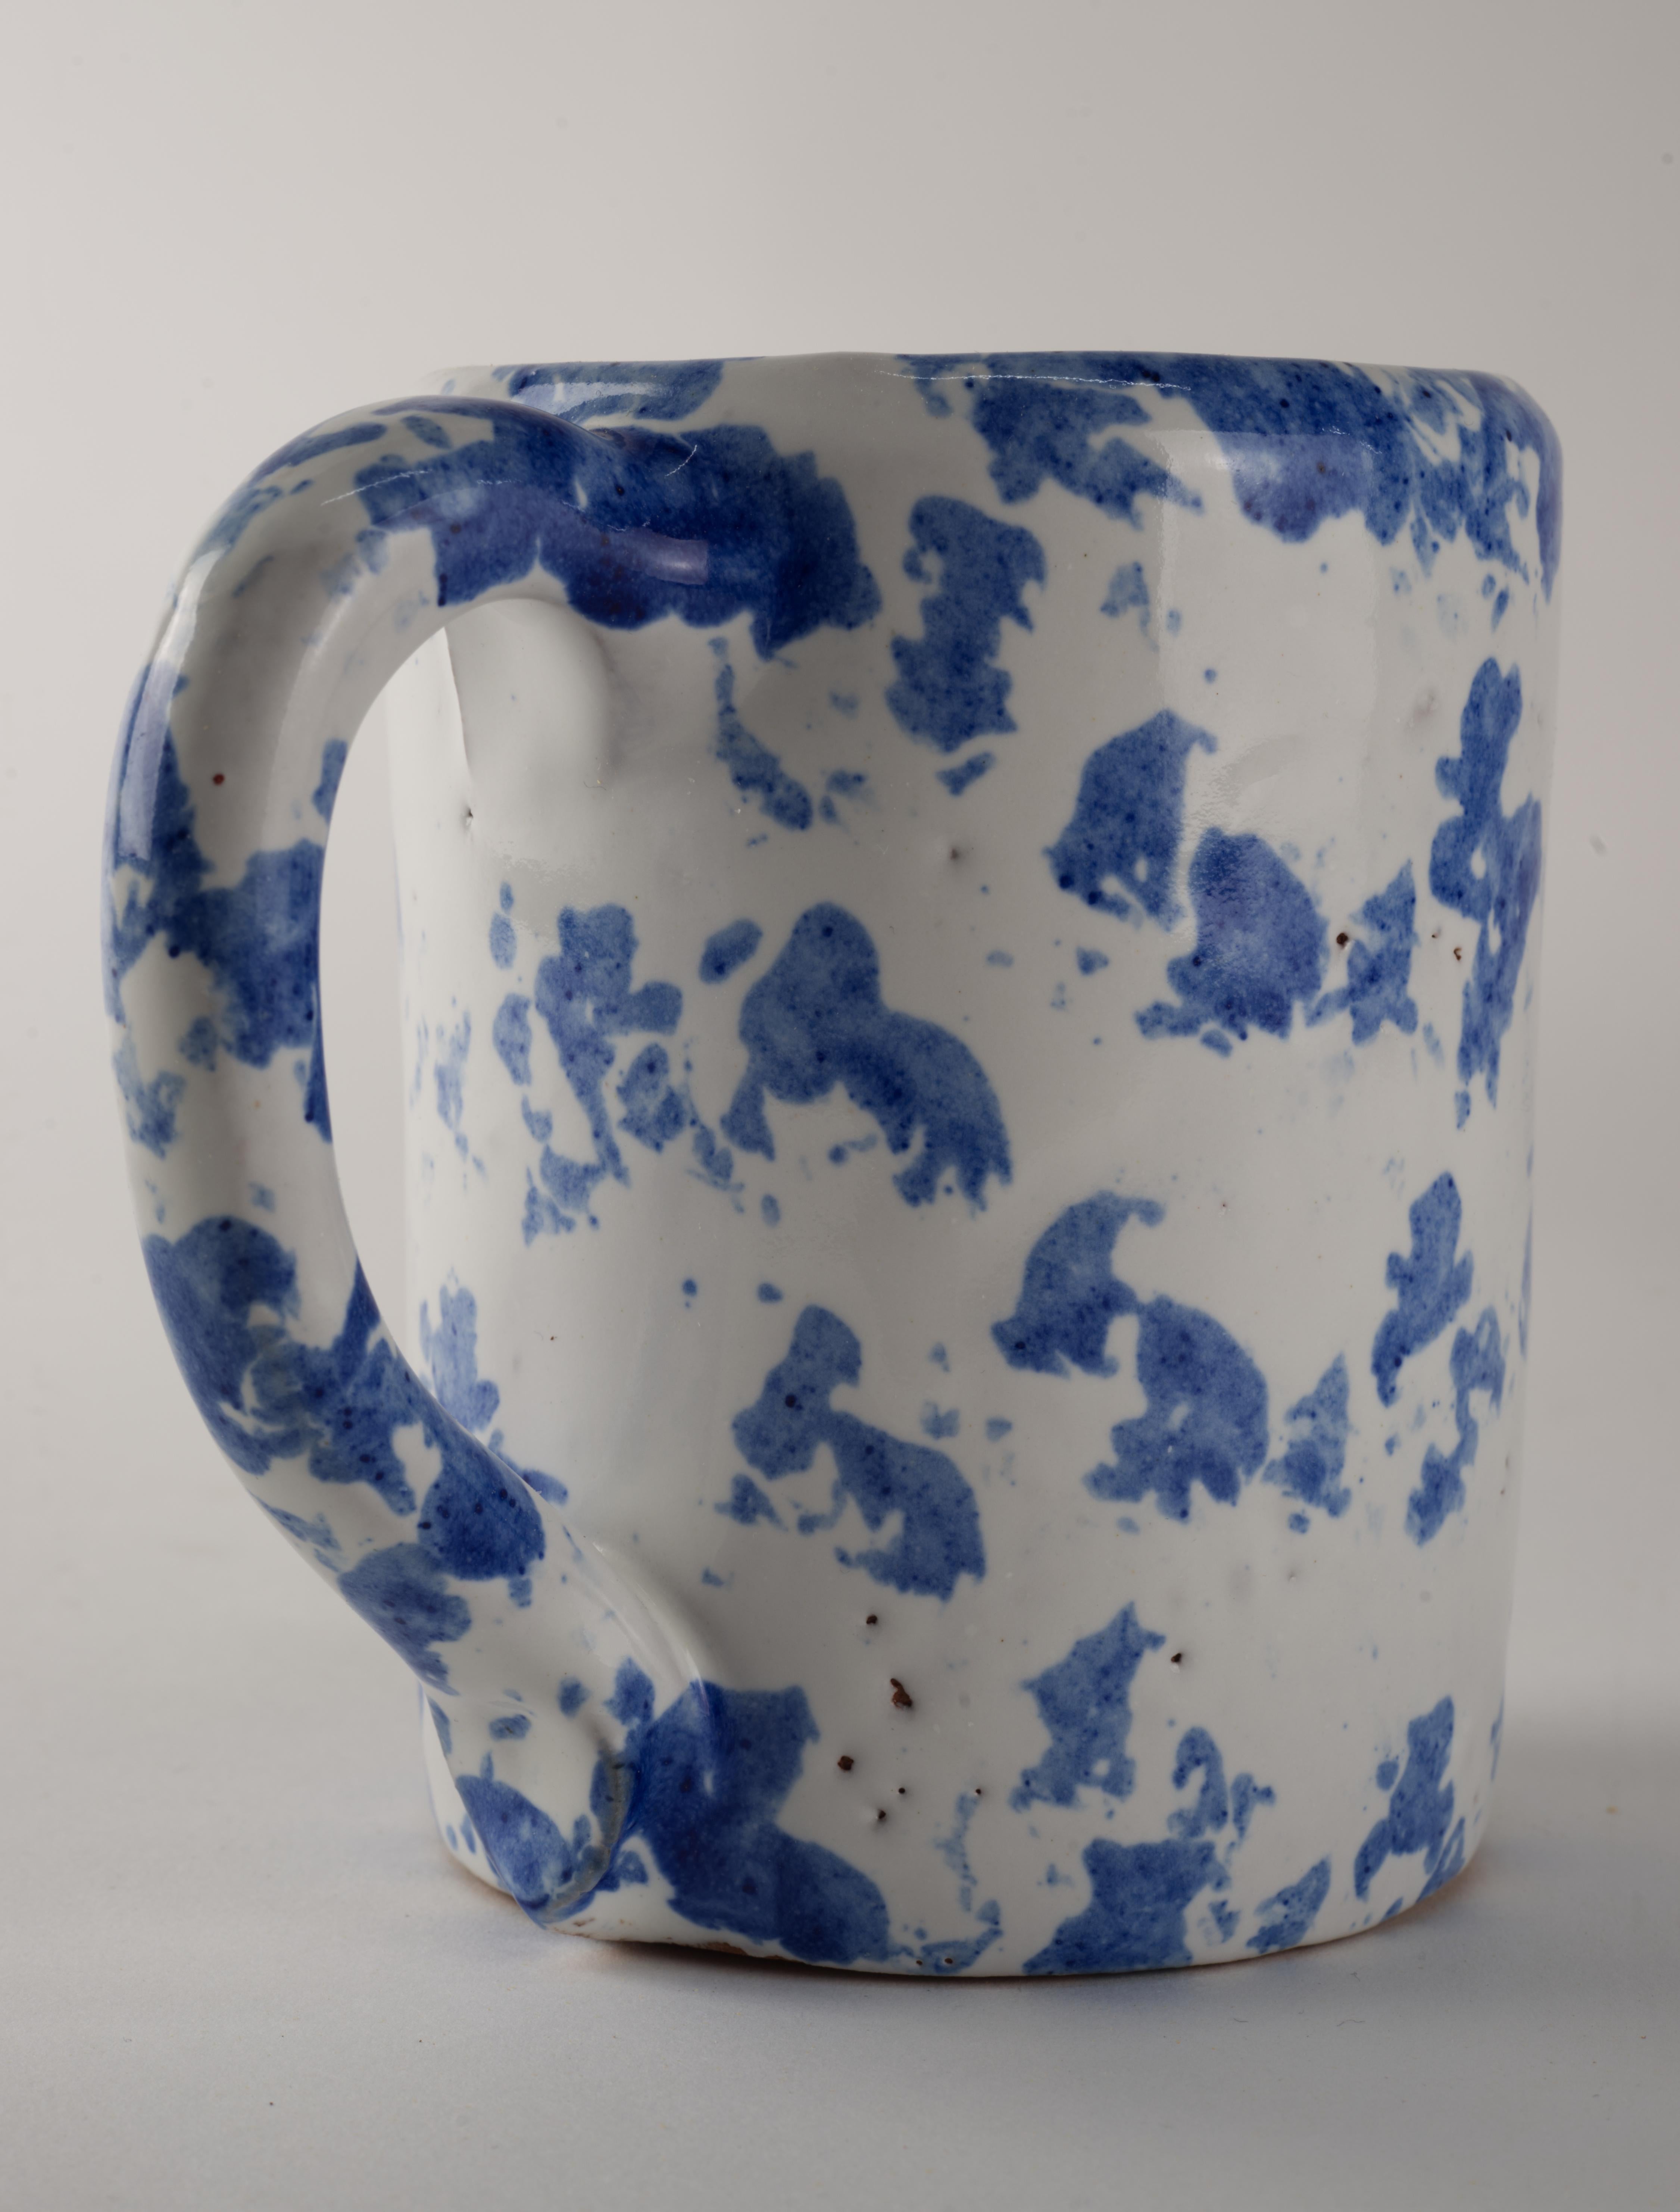  Die seltene große Tasse wurde von Bybee Pottery handgefertigt und von Hand in ihrem charakteristischen blauen Spongeware-Stil dekoriert.  

Bybee Pottery ist eine Kunsttöpferei in Madison County, Kentucky, USA, die von 1809 bis 2019 von